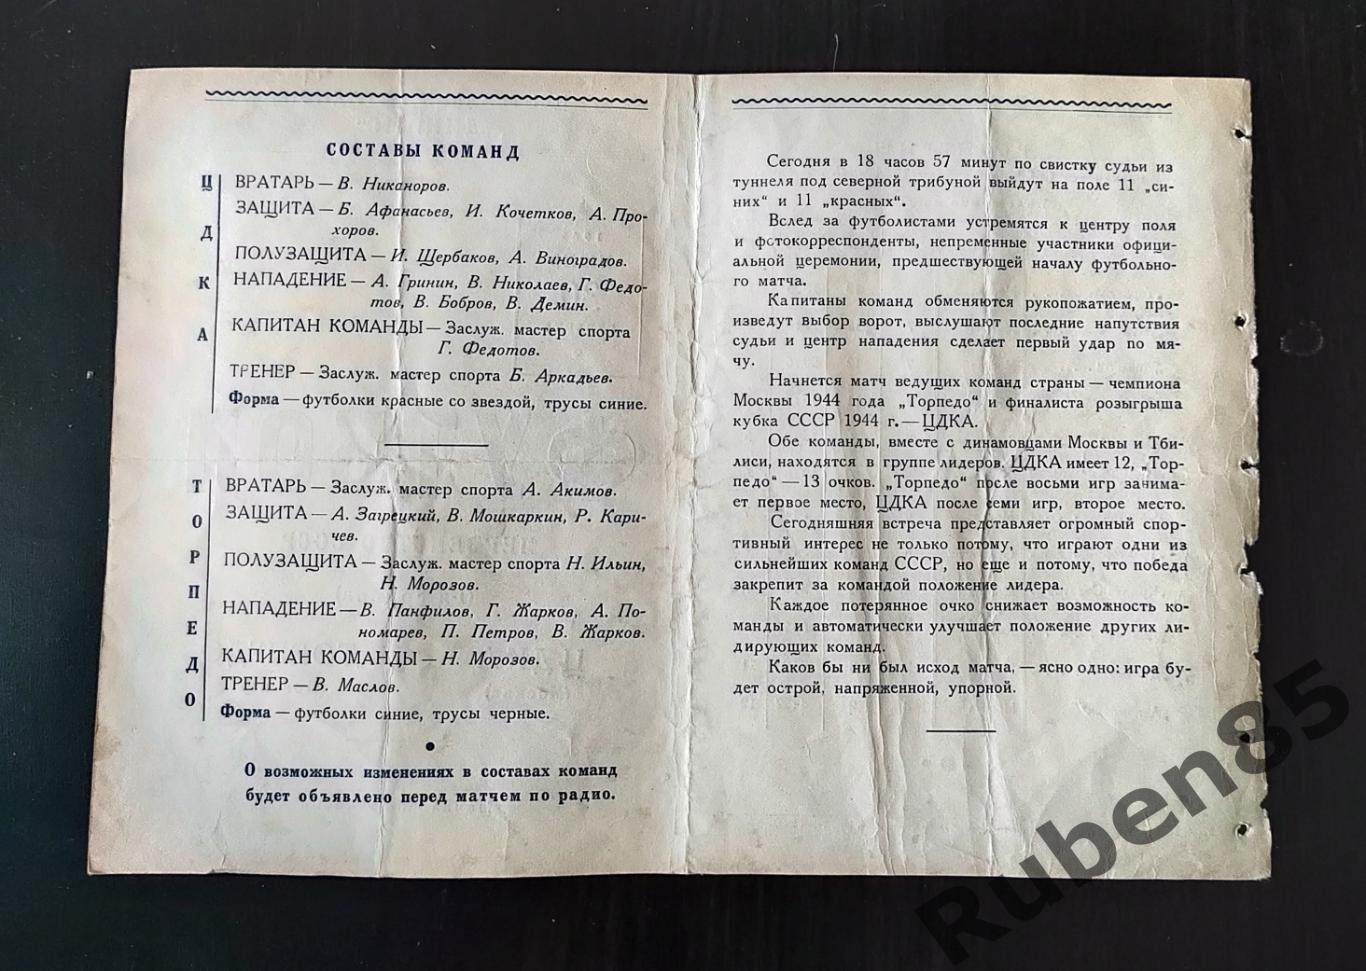 Футбол. Программа ЦДКА - Торпедо Москва 1945 ЦСКА 1